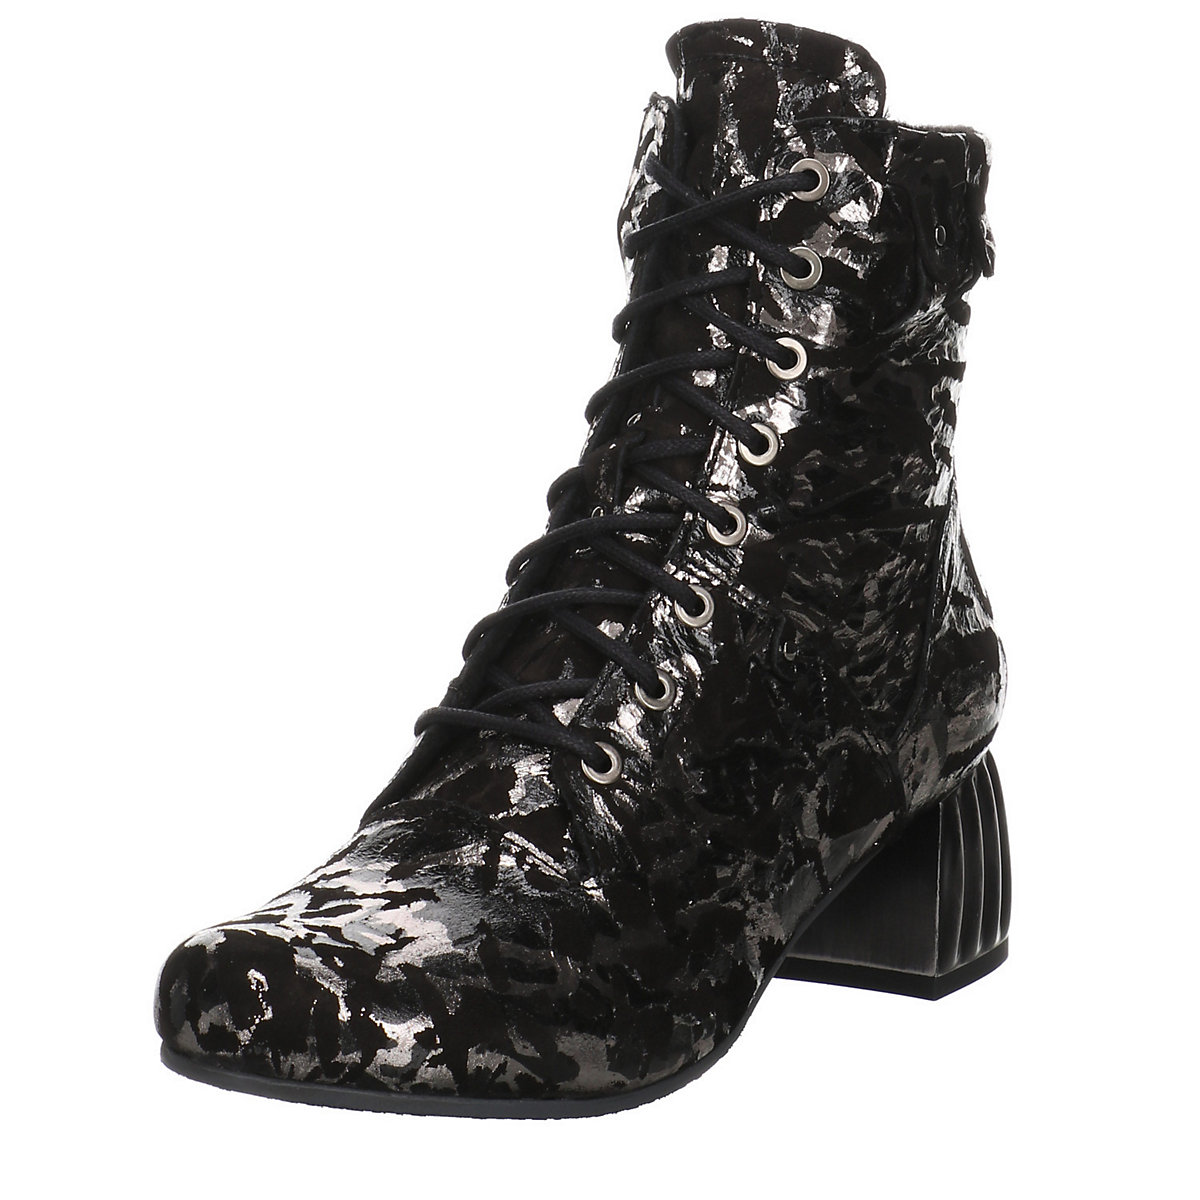 SIMEN Damen Stiefeletten Schuhe Stiefelette Elegant Freizeit Veloursleder bedruckt Schnürstiefeletten schwarz